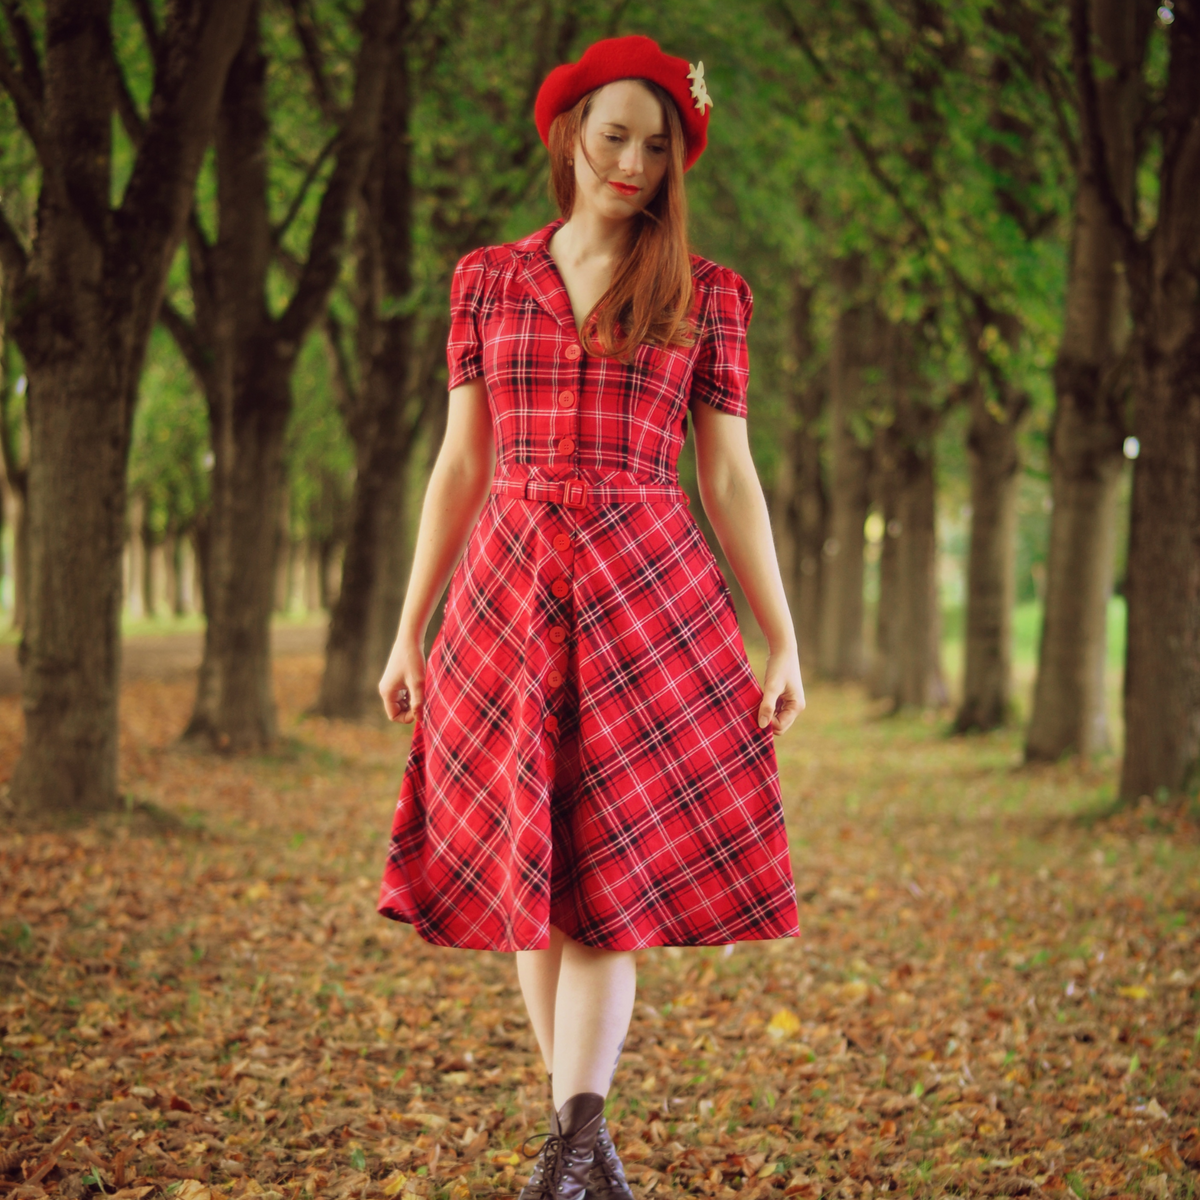 Lisa Shirtwaister Dress in Red Check Tartan